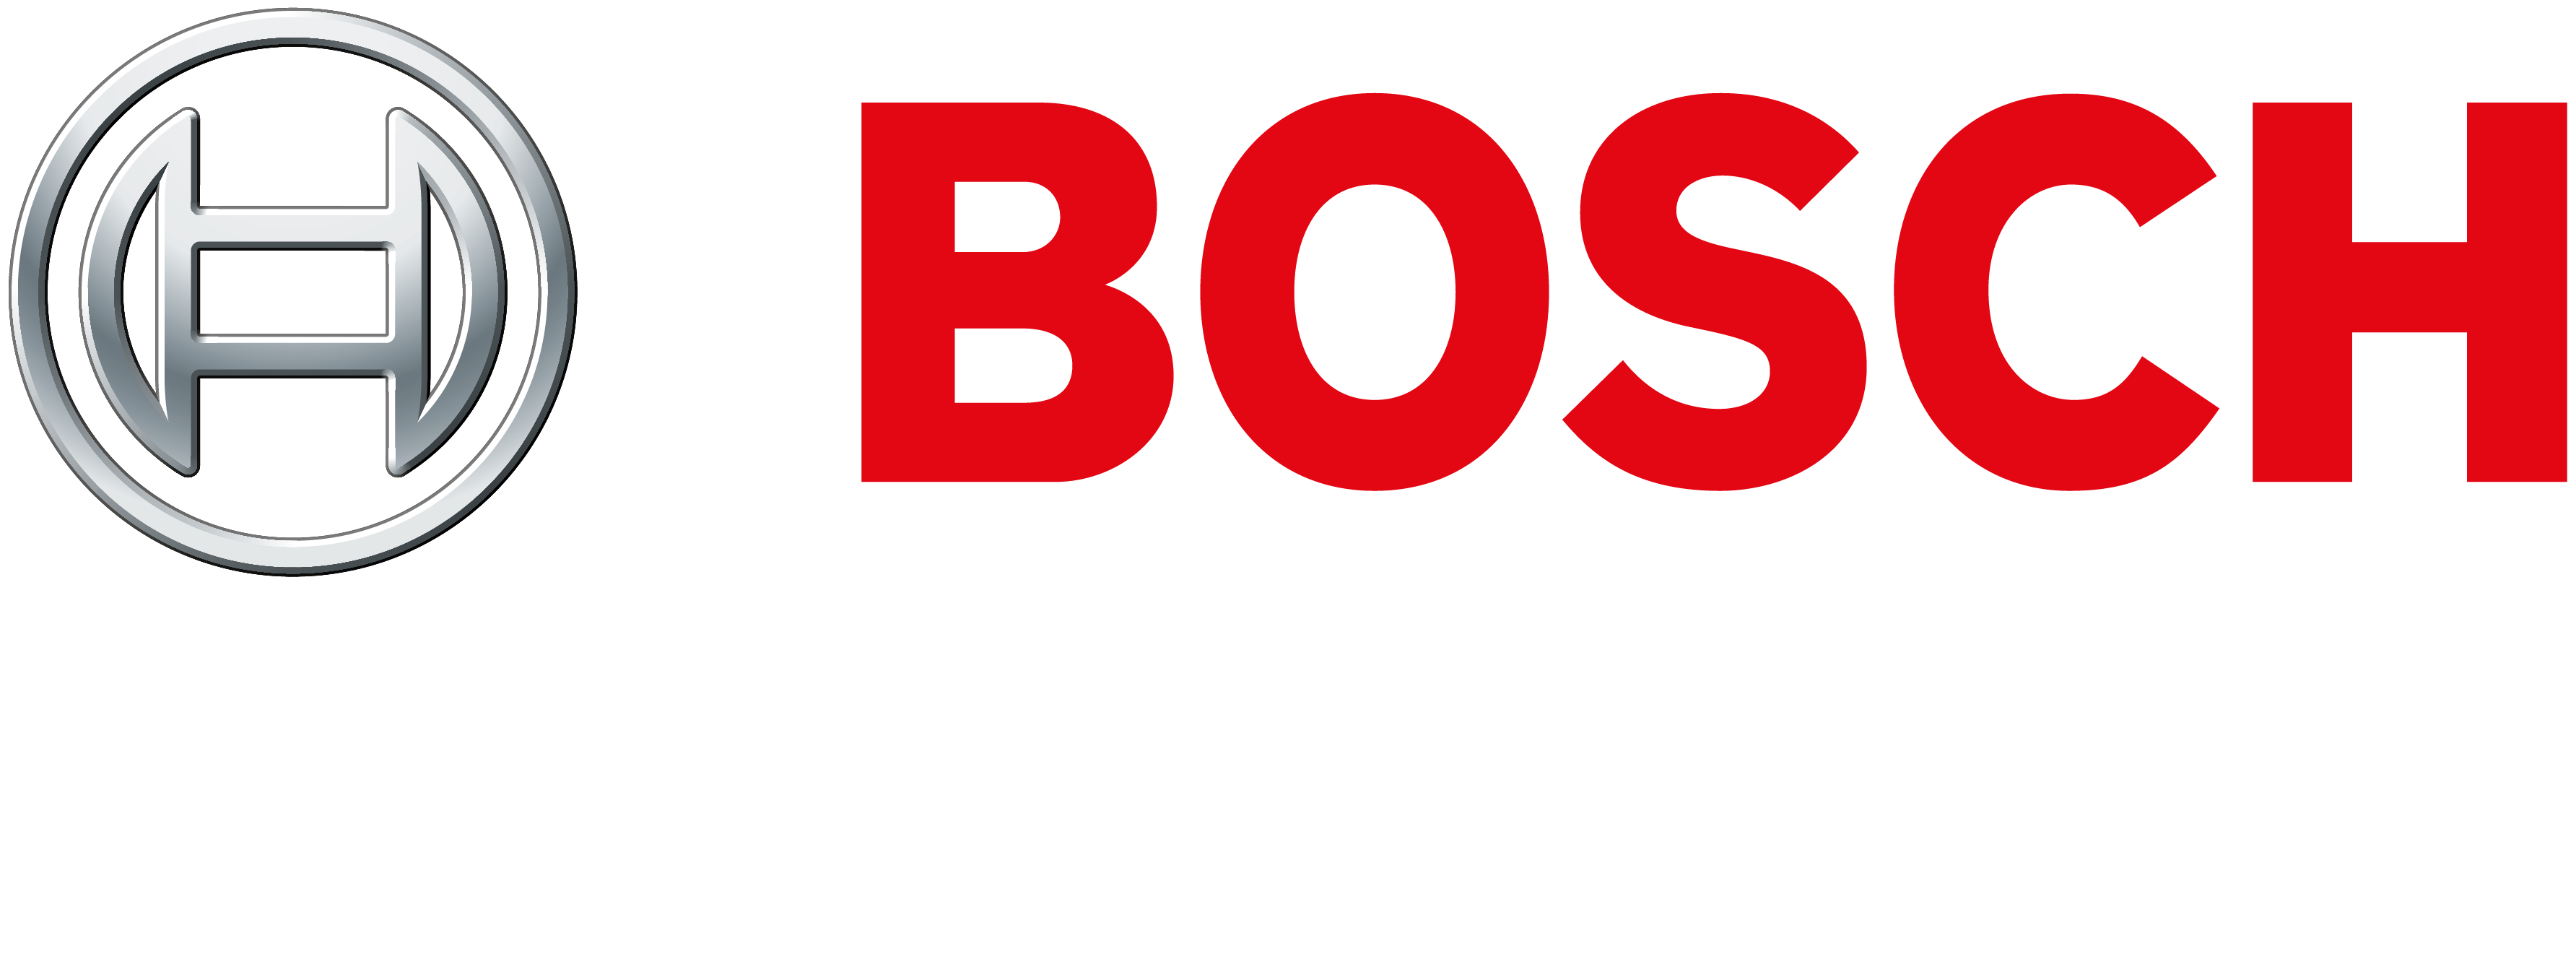 Bosch Motorsport